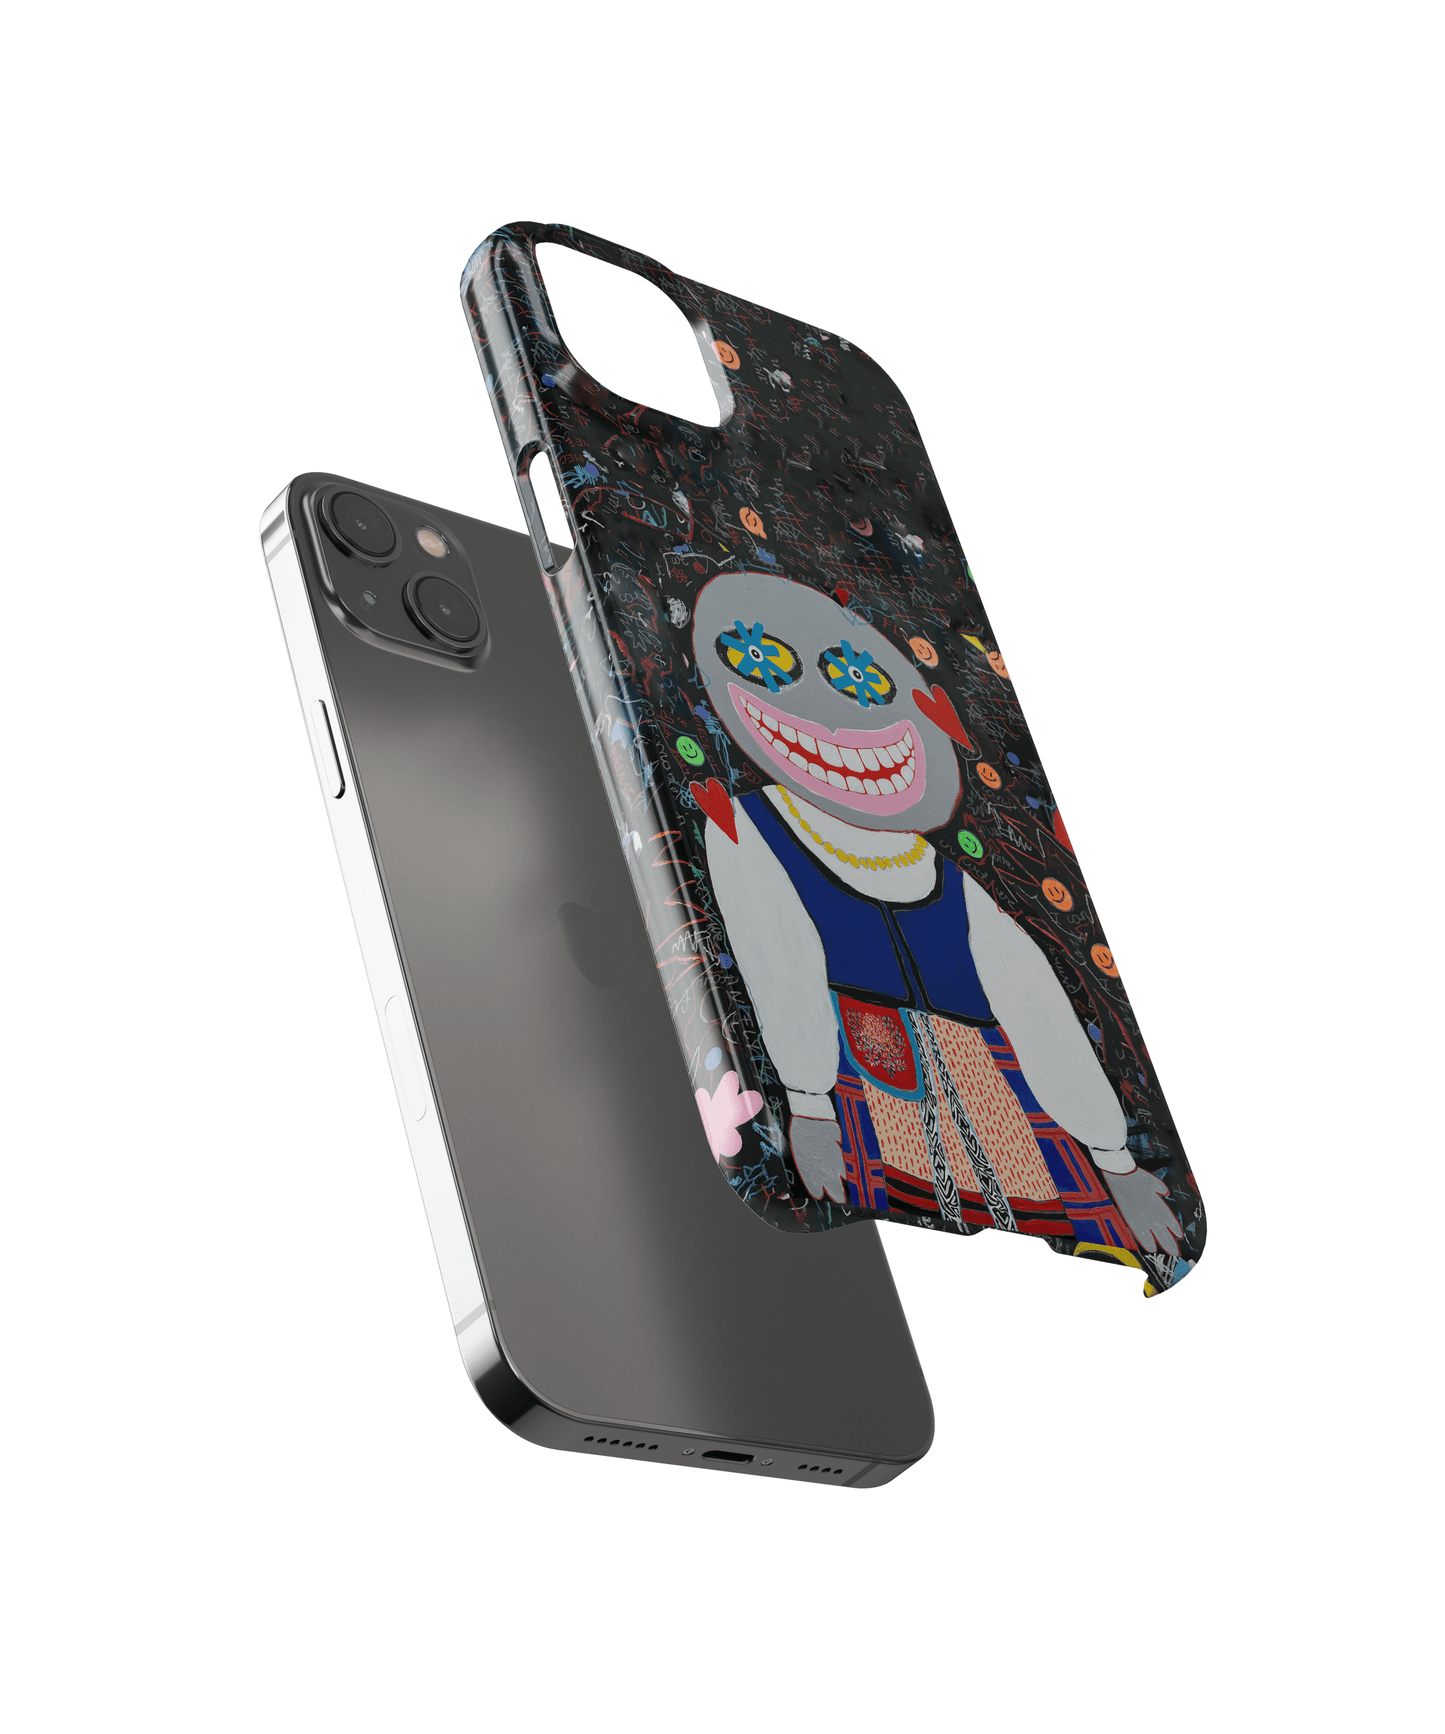 Klaipediete - Google Pixel 2 XL phone case